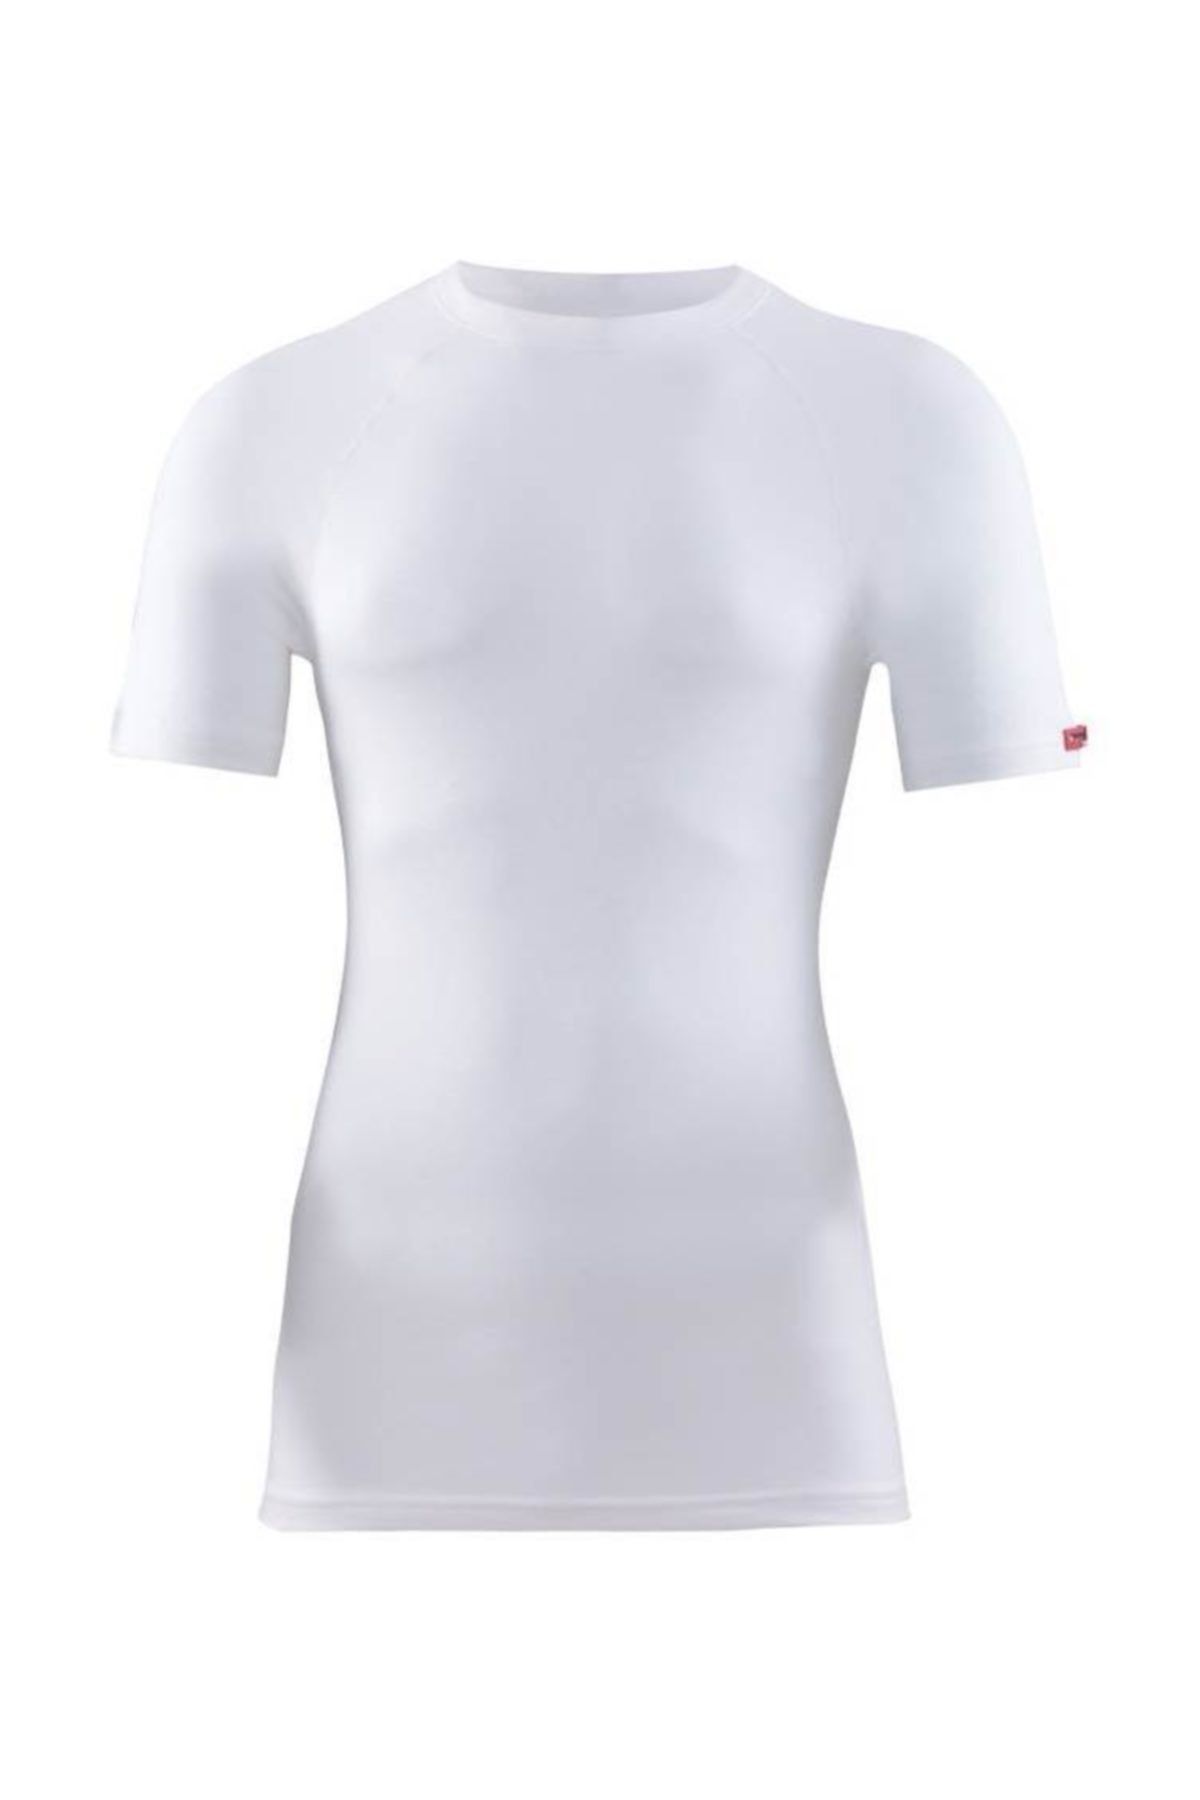 Blackspade Erkek Beyaz 2. Seviye 9258 Termal T-shirt